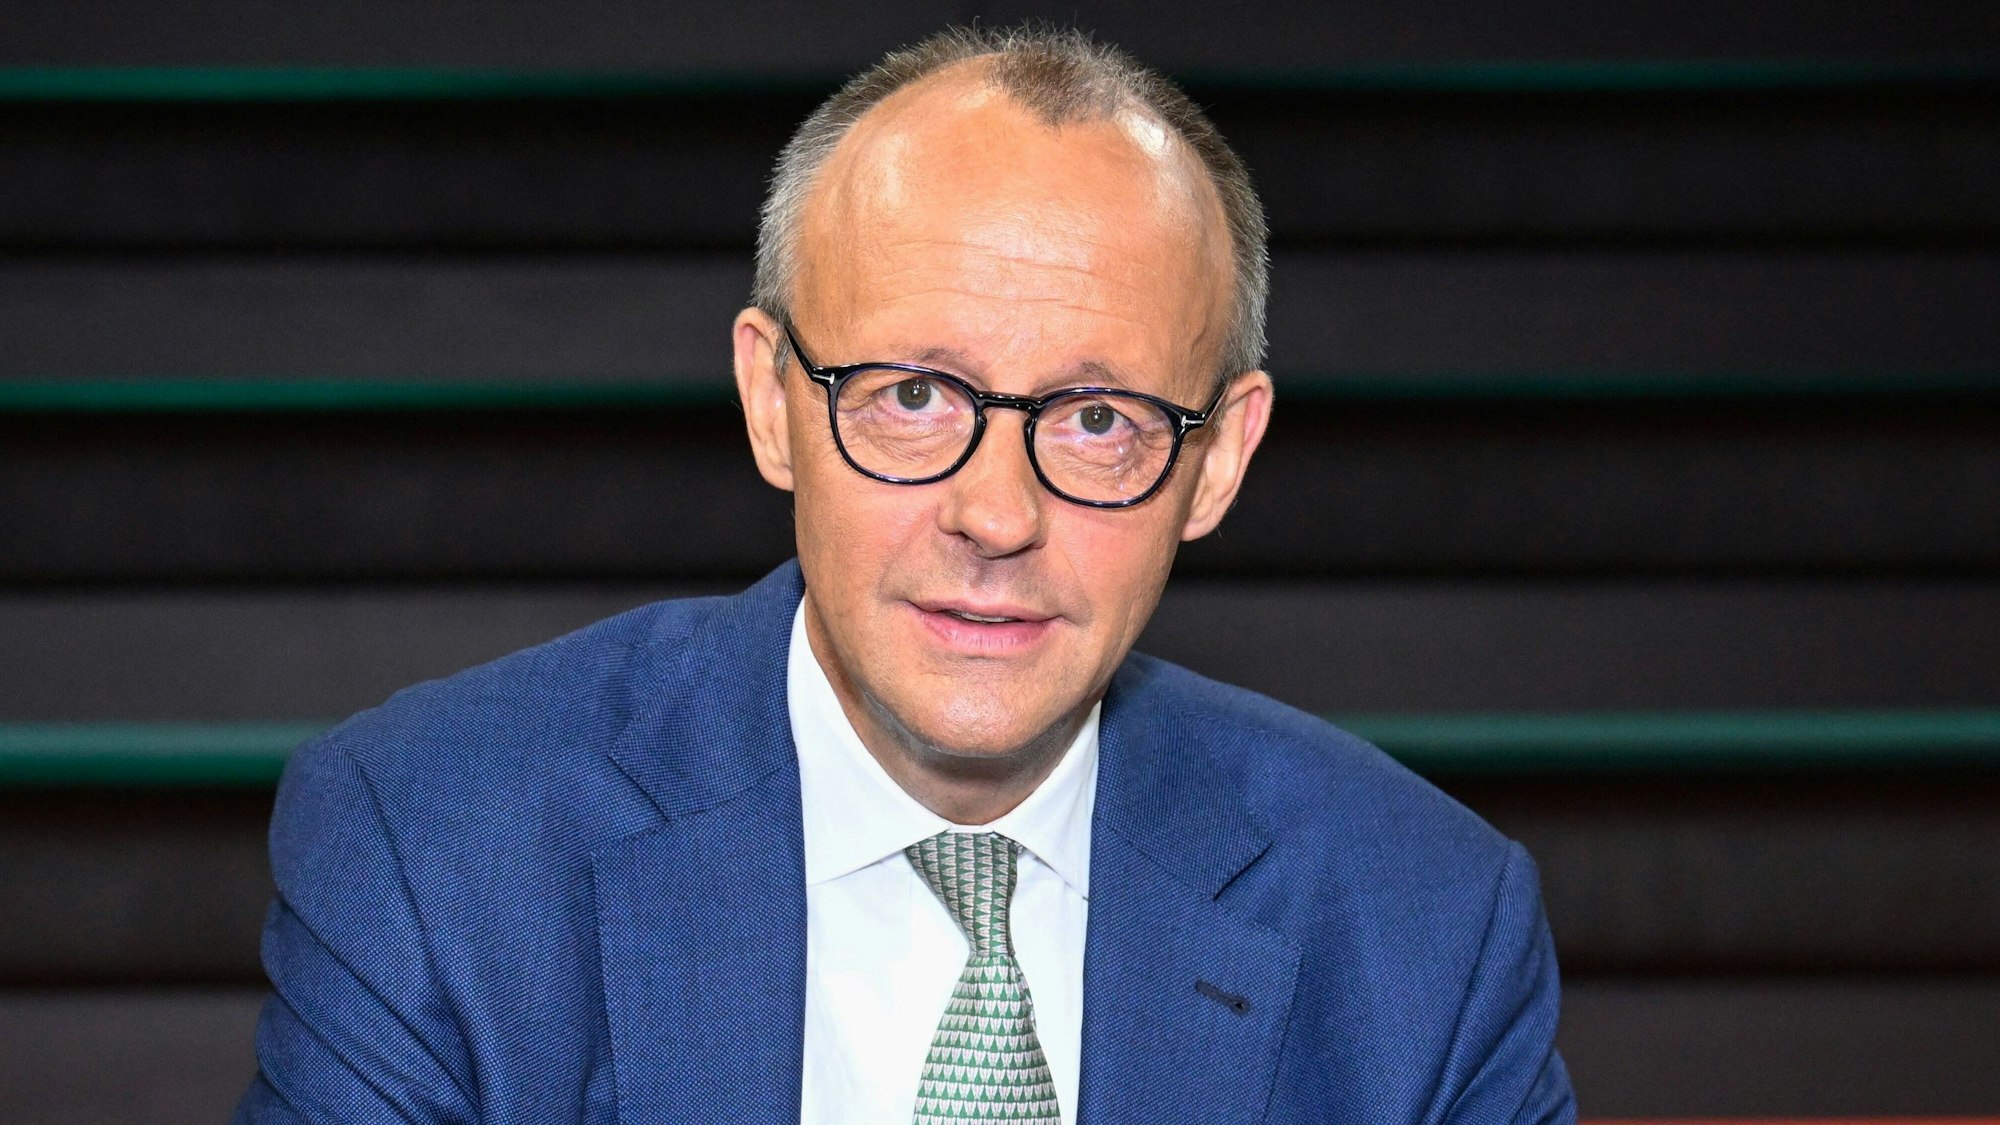 Friedrich Merz im Studio der ZDF-Talkshow „Markus Lanz“. Der Auftritt des CDU-Chefs sorgte am Dienstagabend für Wirbel.